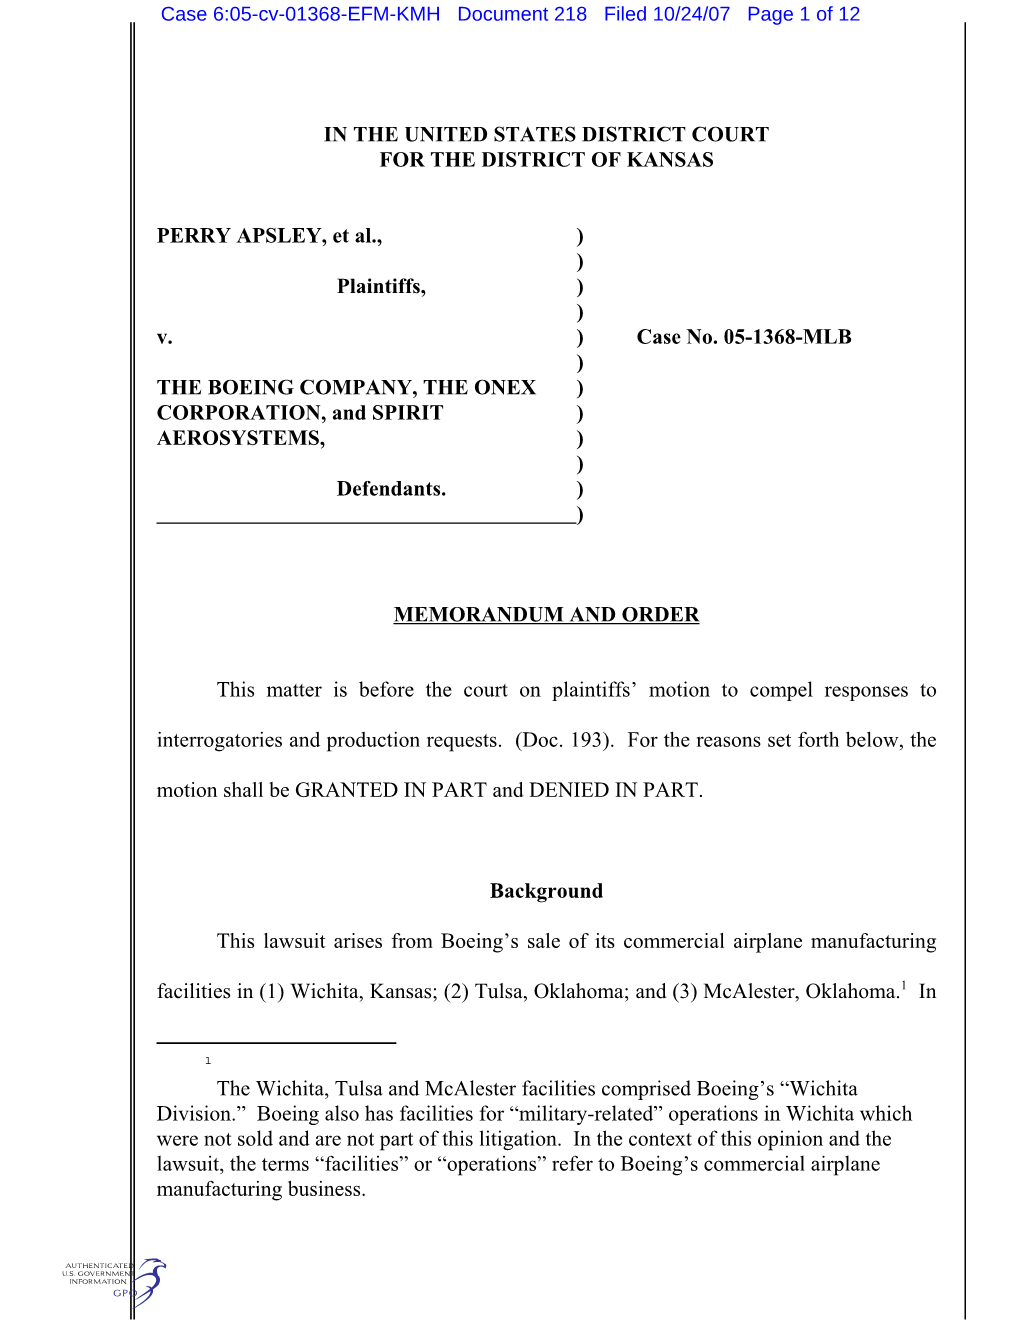 Case 6:05-Cv-01368-EFM-KMH Document 218 Filed 10/24/07 Page 1 of 12